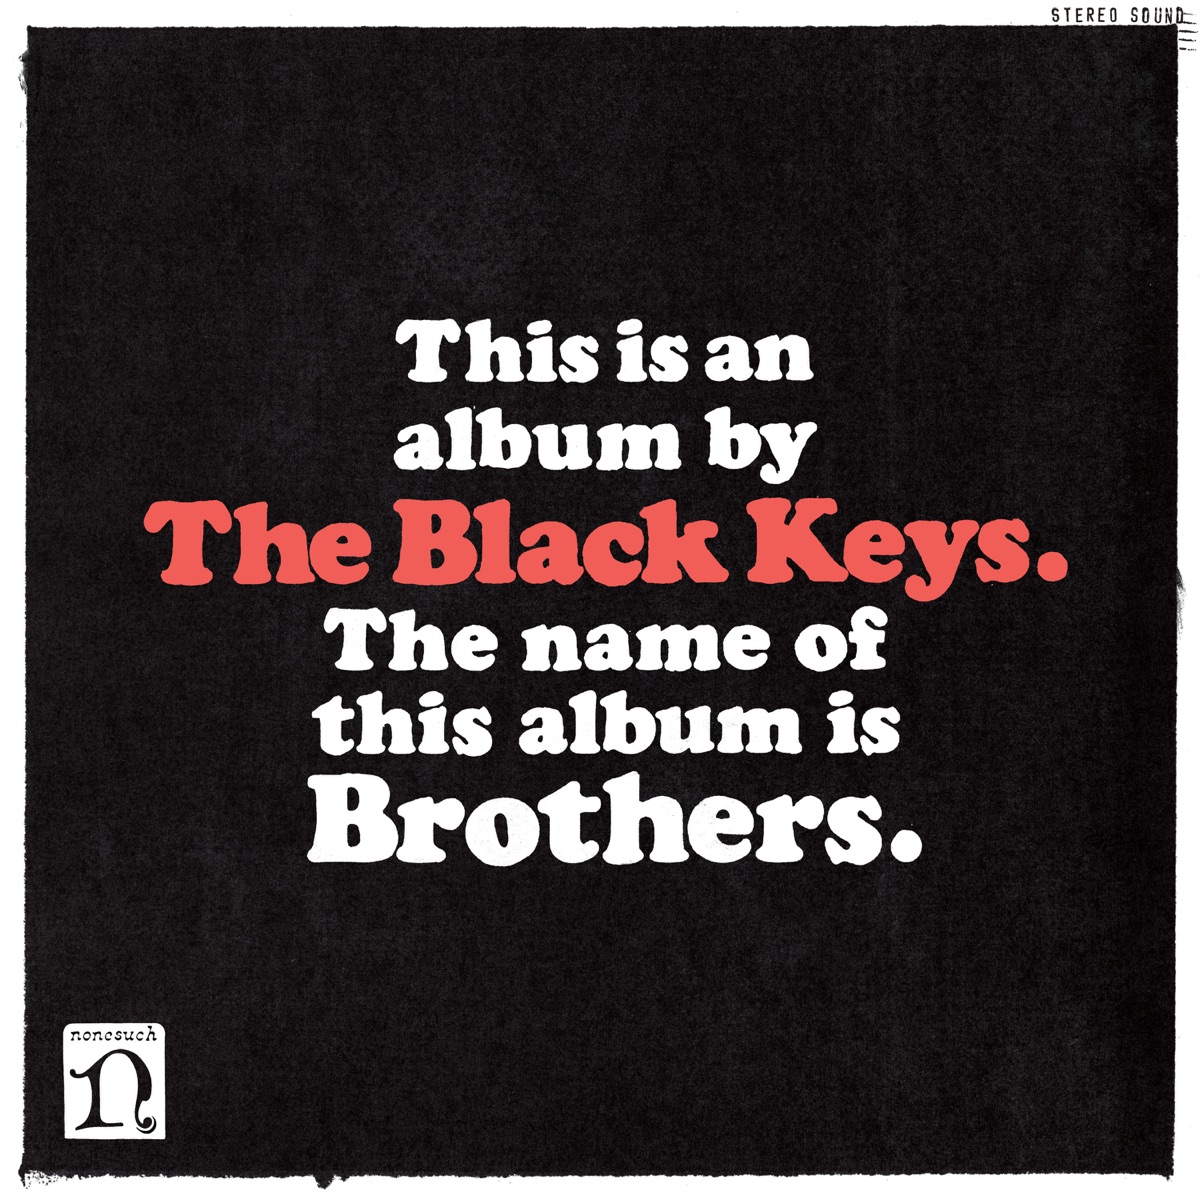 The Black Keys - El Camino 10th Anniversary Deluxe Edition